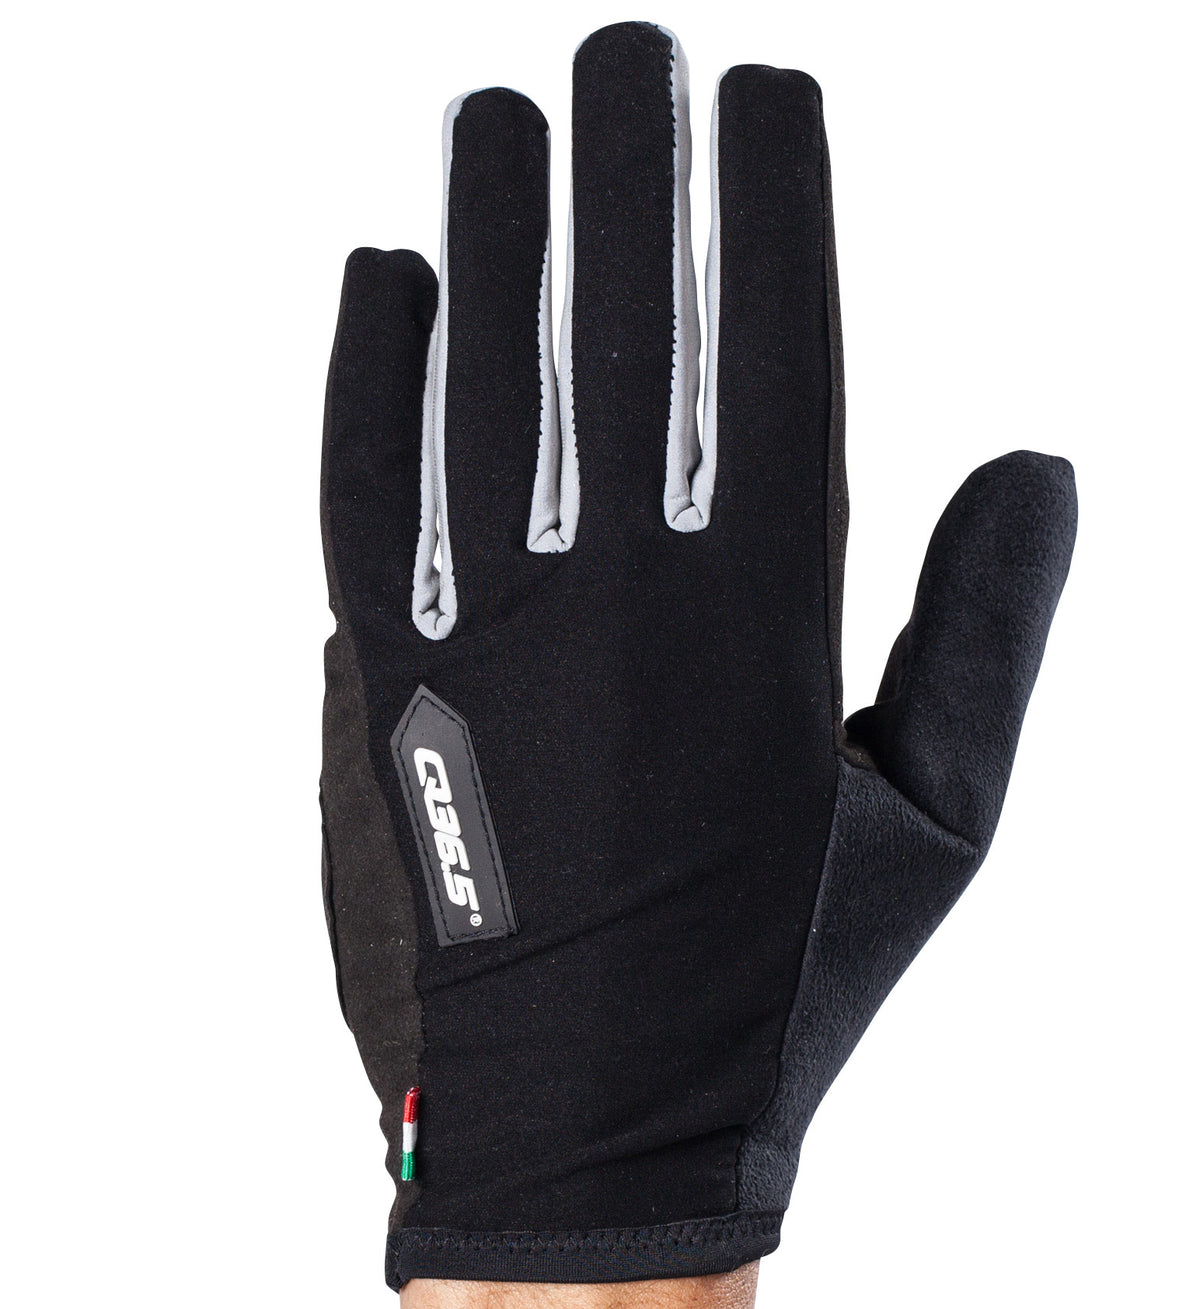 Q36.5 Hybrid Que Glove - Unisex